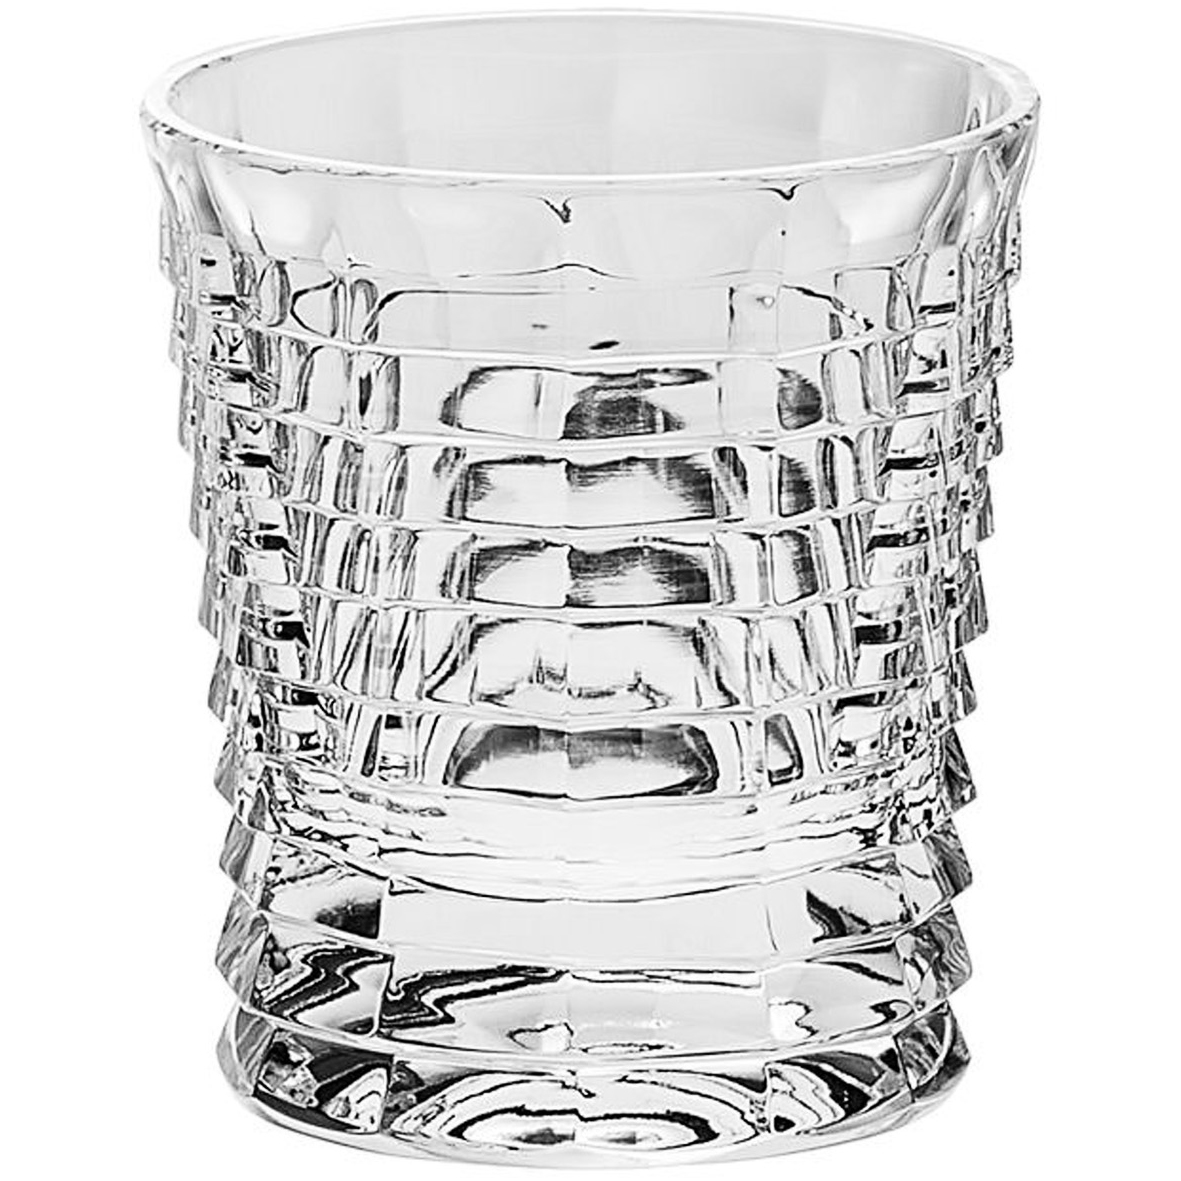 Набор стаканов Crystal Bohemia A.S. БПХ440 набор bohemia jihlava nicolette 6 стаканов для воды 430 мл хрусталь